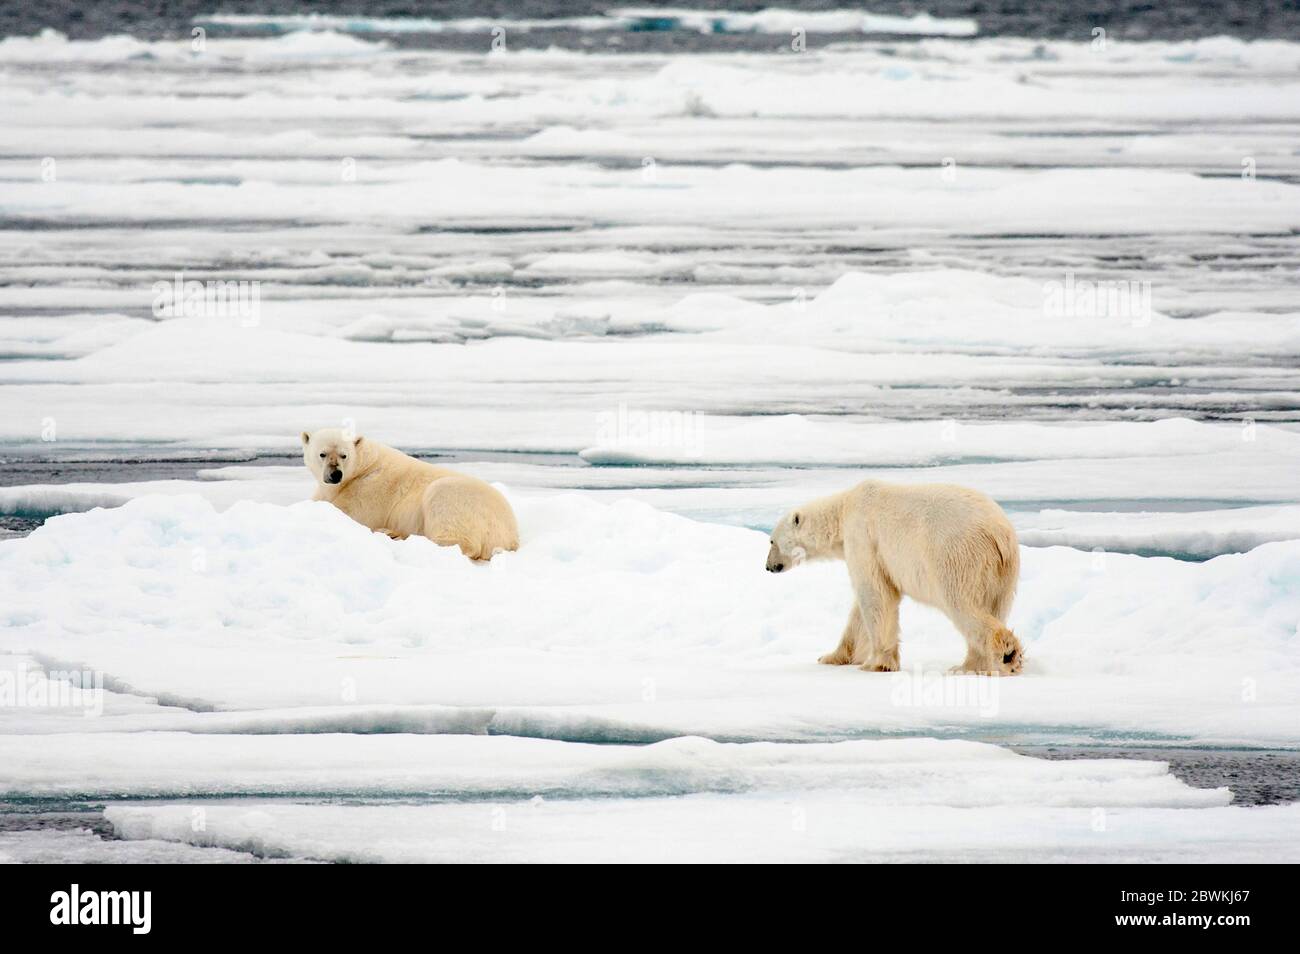 polar bear (Ursus maritimus), two bears on an ice floe, Norway, Svalbard Stock Photo